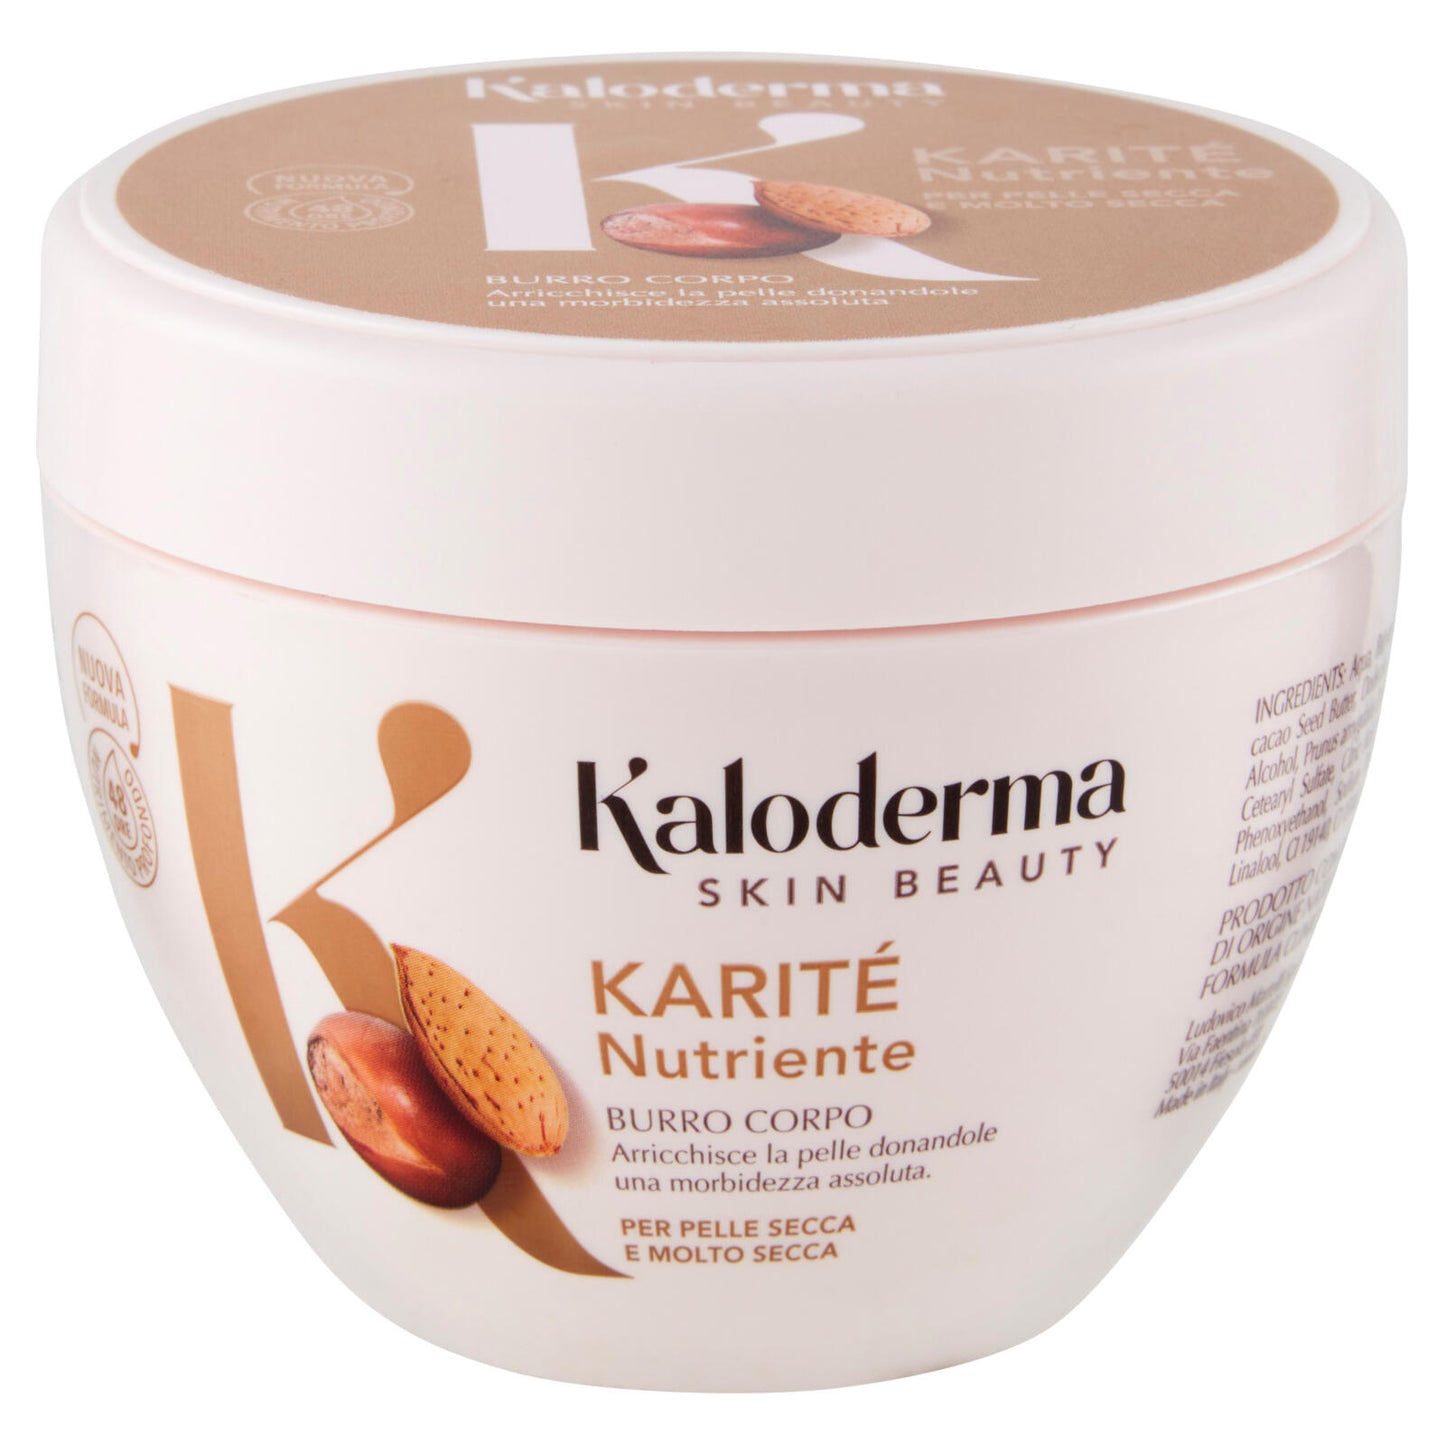 Kaloderma Karité Nutriente Burro Corpo per Pelle Secca e Molto Secca 300 ml